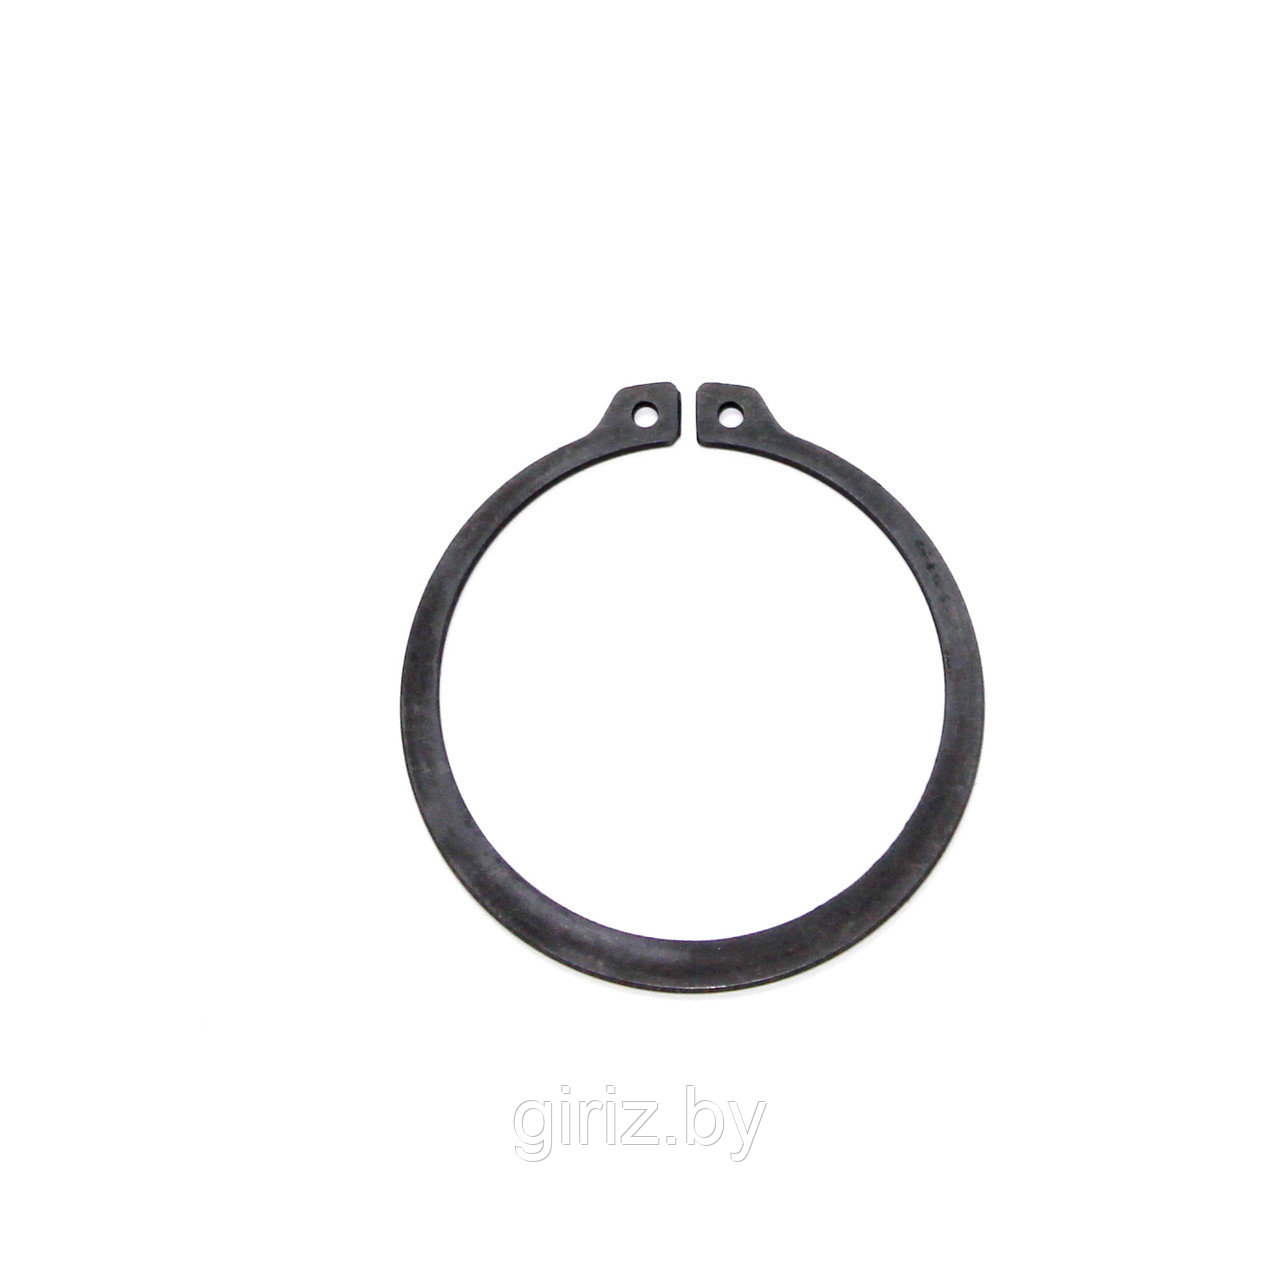 Стопорное кольцо DIN 471 30 мм (с ушками)